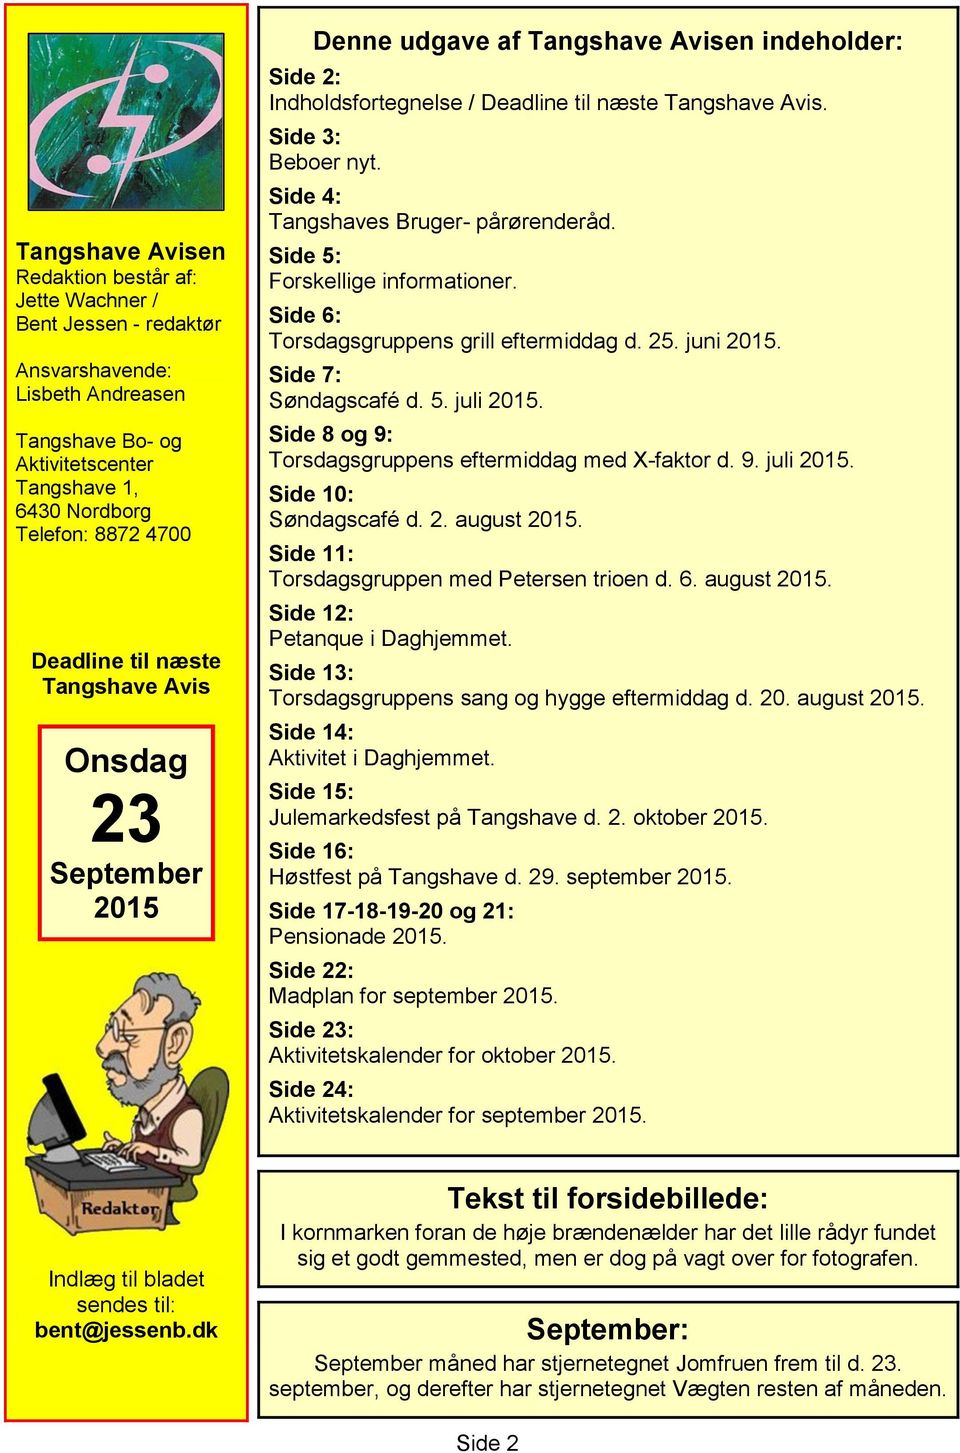 Side 4: Tangshaves Bruger- pårørenderåd. Side 5: Forskellige informationer. Side 6: Torsdagsgruppens grill eftermiddag d. 25. juni 2015. Side 7: Søndagscafé d. 5. juli 2015.